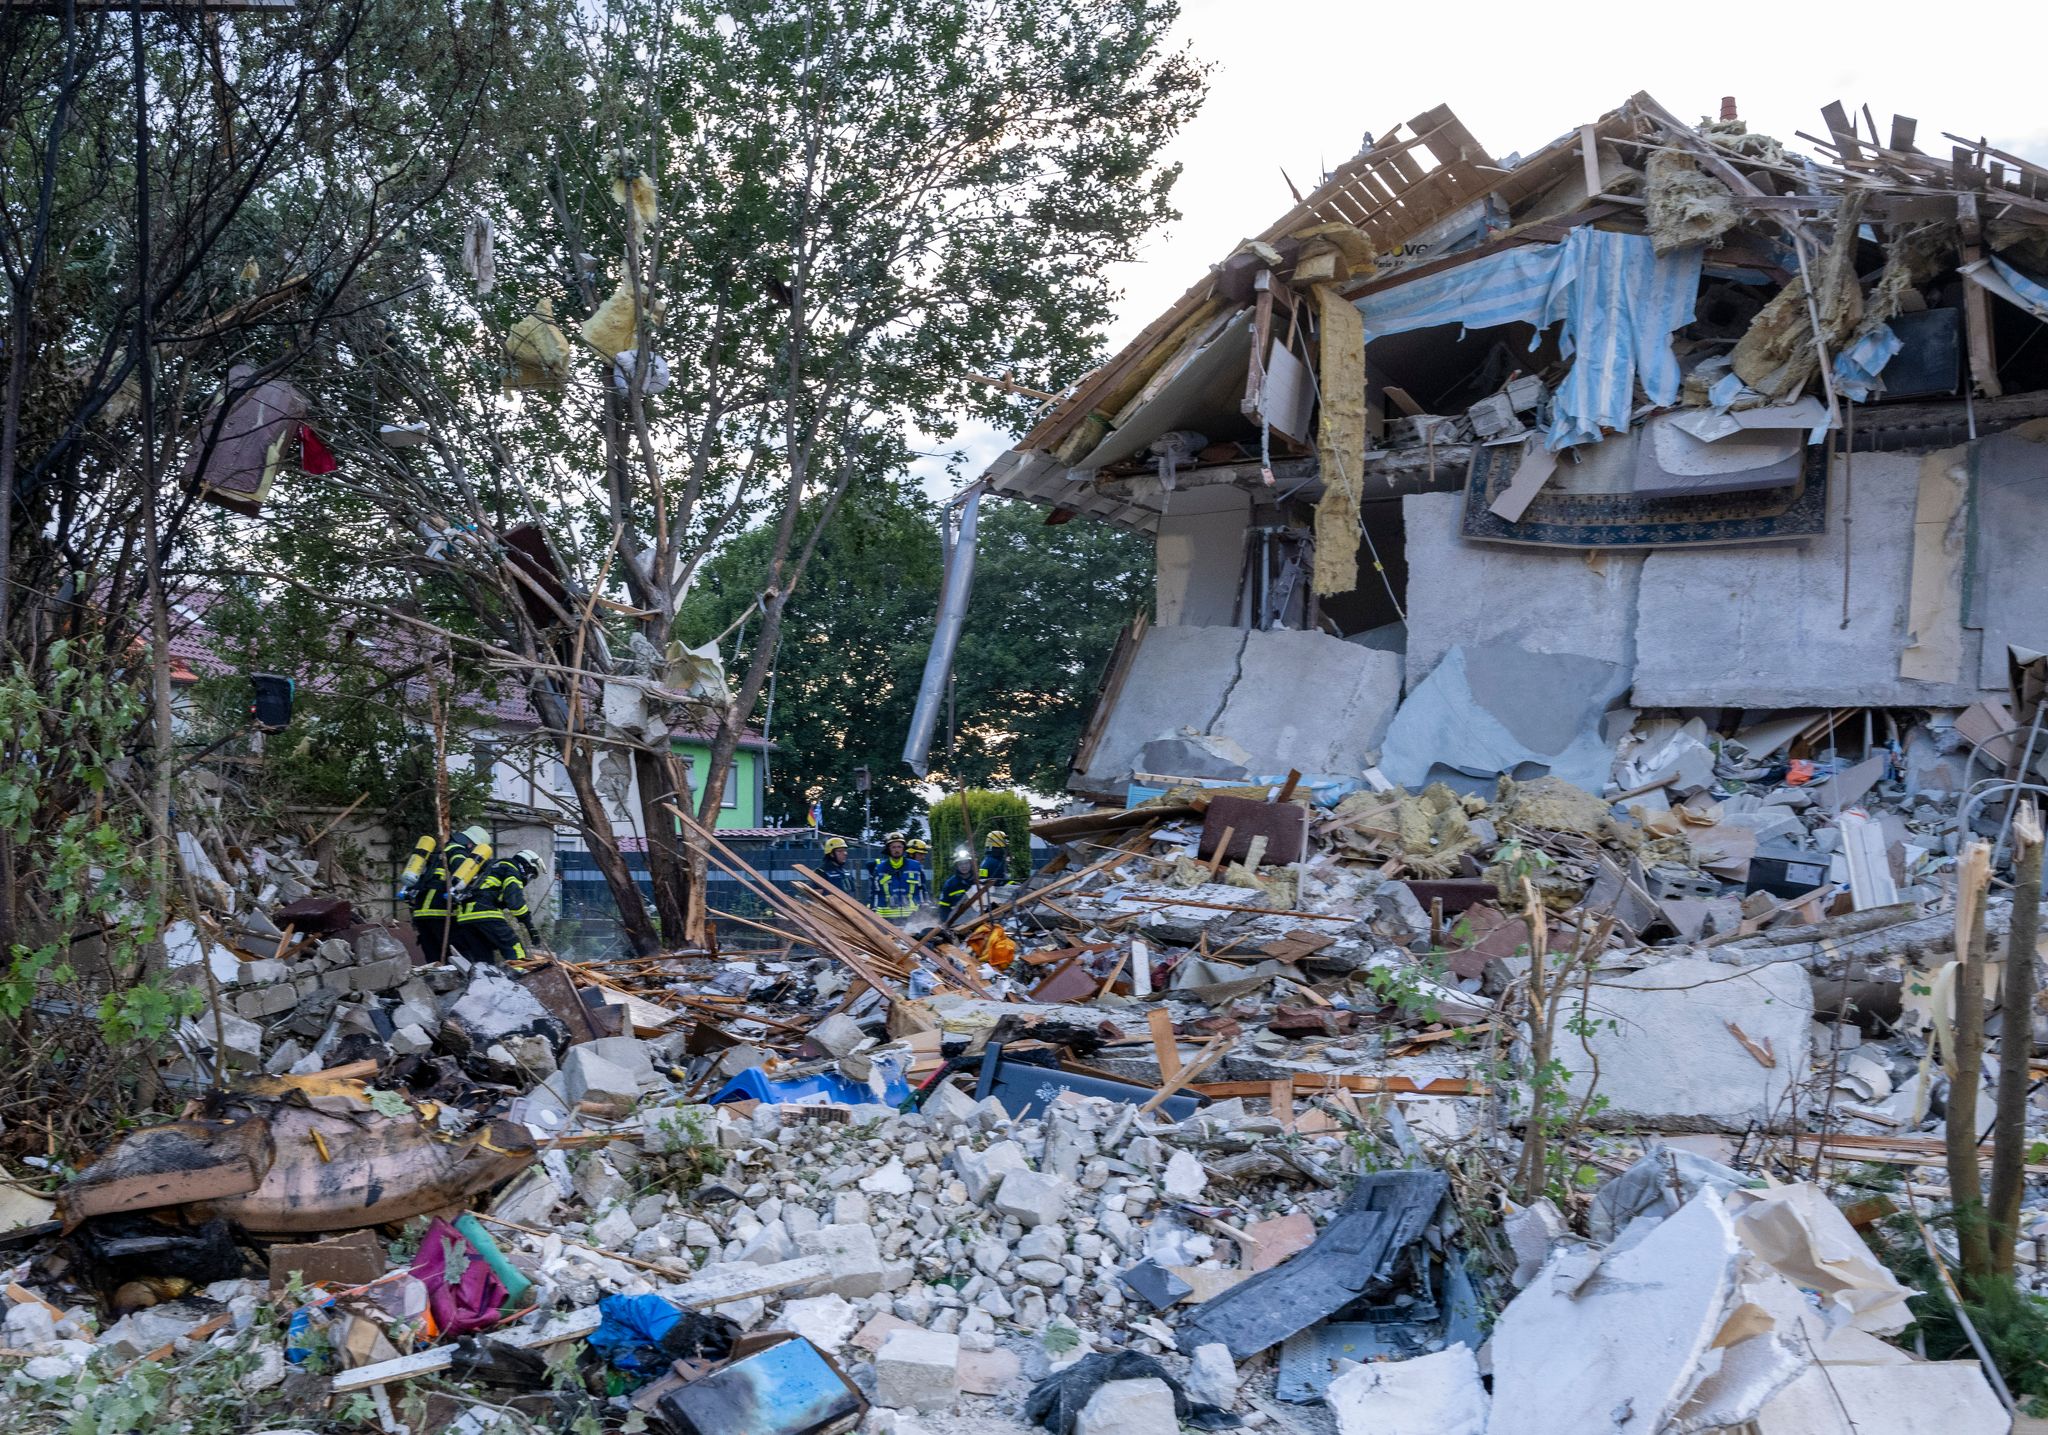 Nach Explosion: Toter aus Trümmern in Memmingen geborgen